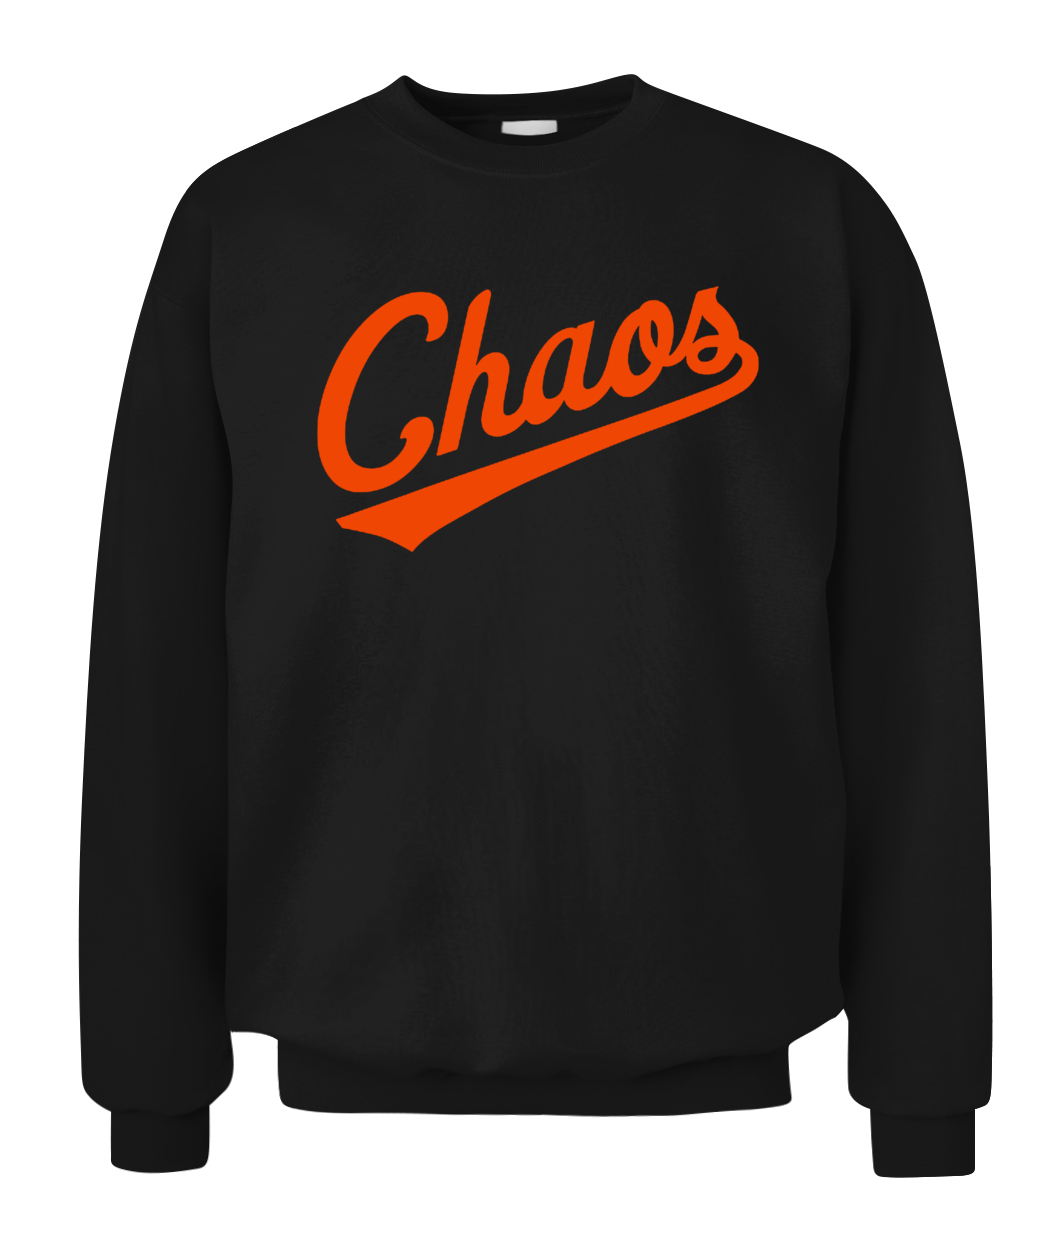 Orioles Chaos Comin' Shirts - Long Sleeve T Shirt, Sweatshirt